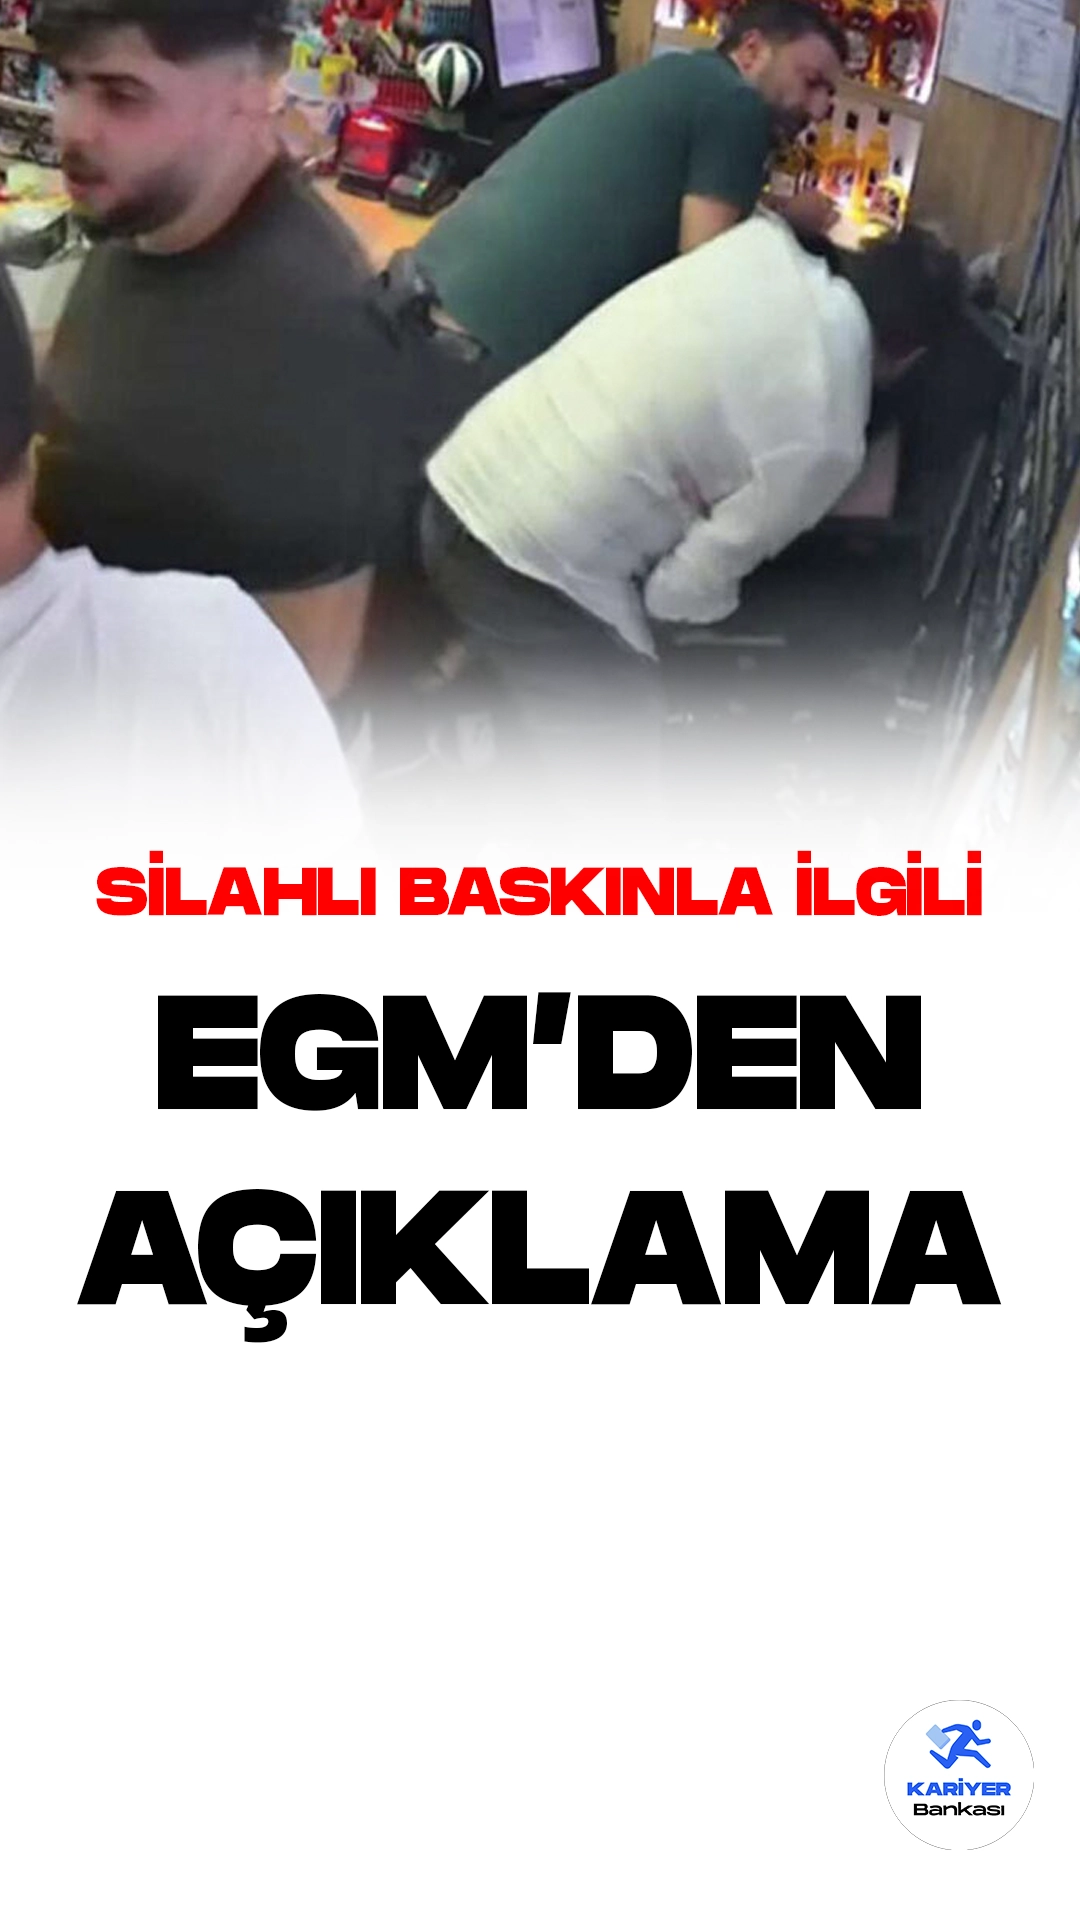 İstanbul Esenyurt'ta Yaşanan Silahlı Baskınla İlgili EGM'den Açıklama Geldi.EGM resmi sayfasından yayımlanan duyuruda, "İstanbul'un Esenyurt ilçesindeki bir iş yerinde, dün saat 23.30 sıralarında meydana gelen ve ateşli silah kullanılan olayda, maalesef 2 vatandaşımız hayatını kaybetmiş, 1 vatandaşımız yaralanmıştır. Taraflar arasındaki husumet nedeniyle gerçekleştiği değerlendirilen olayın aydınlatılması ve faillerin yakalanması için sürdürülen çalışmalarda şüphelilerden M.Ö. (hakkında 3 adet suç kaydı var) yakalanarak gözaltına alınmıştır. Olaya karışan 3 firari şüphelinin yakalanmasına yönelik çalışmalar devam etmektedir. Kamuoyuna saygıyla duyurulur." ifadelerine yer verildi.